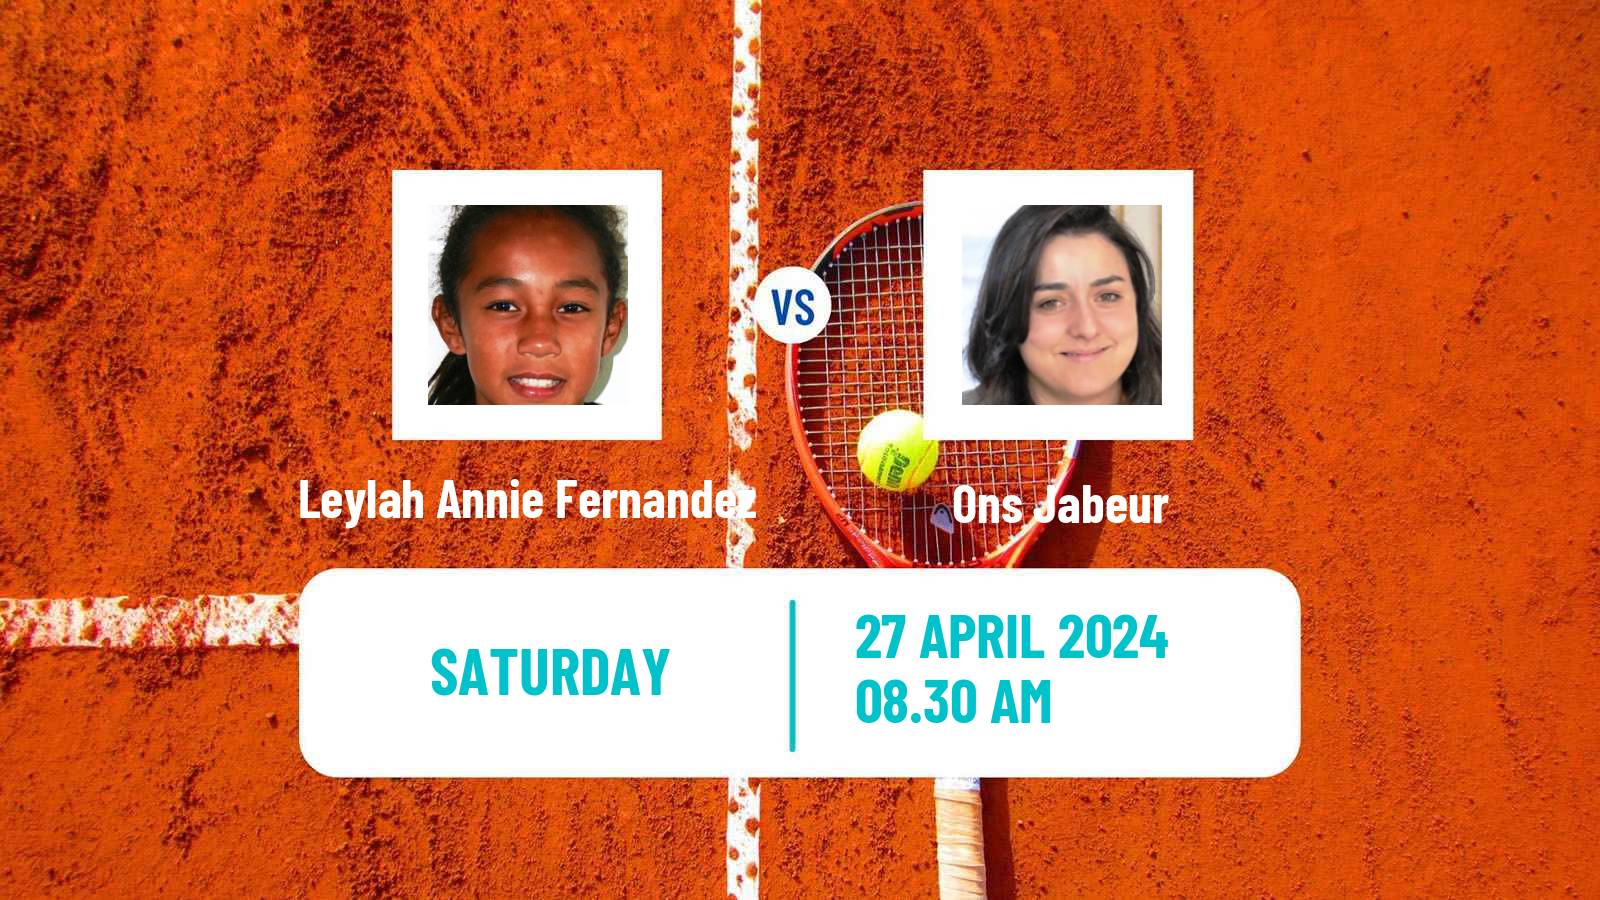 Tennis WTA Madrid Leylah Annie Fernandez - Ons Jabeur